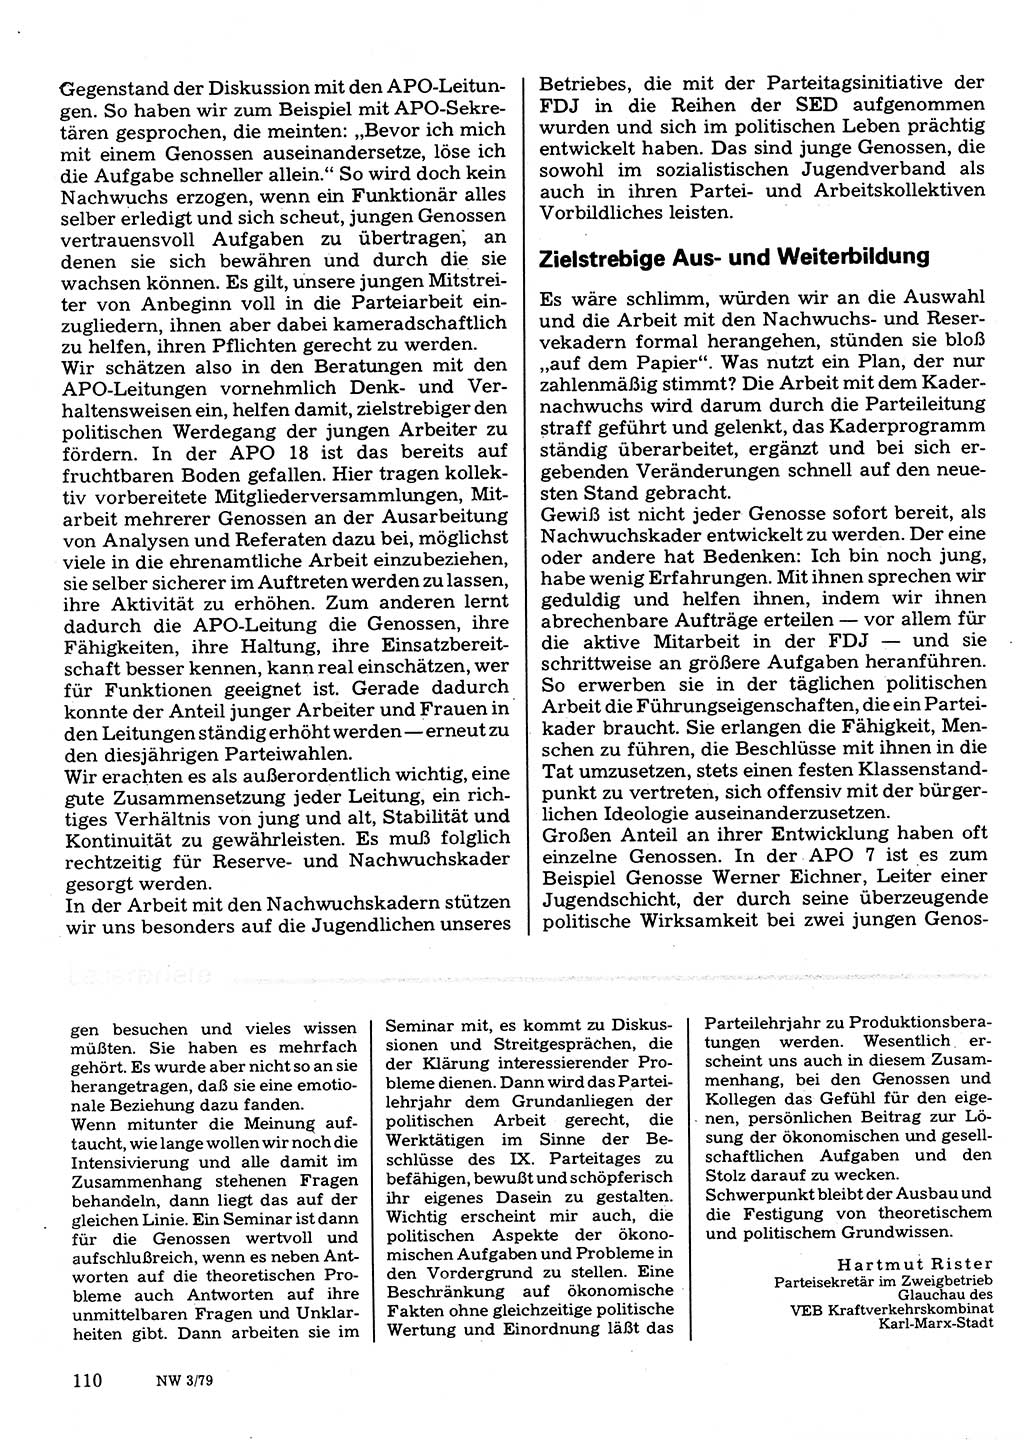 Neuer Weg (NW), Organ des Zentralkomitees (ZK) der SED (Sozialistische Einheitspartei Deutschlands) für Fragen des Parteilebens, 34. Jahrgang [Deutsche Demokratische Republik (DDR)] 1979, Seite 110 (NW ZK SED DDR 1979, S. 110)